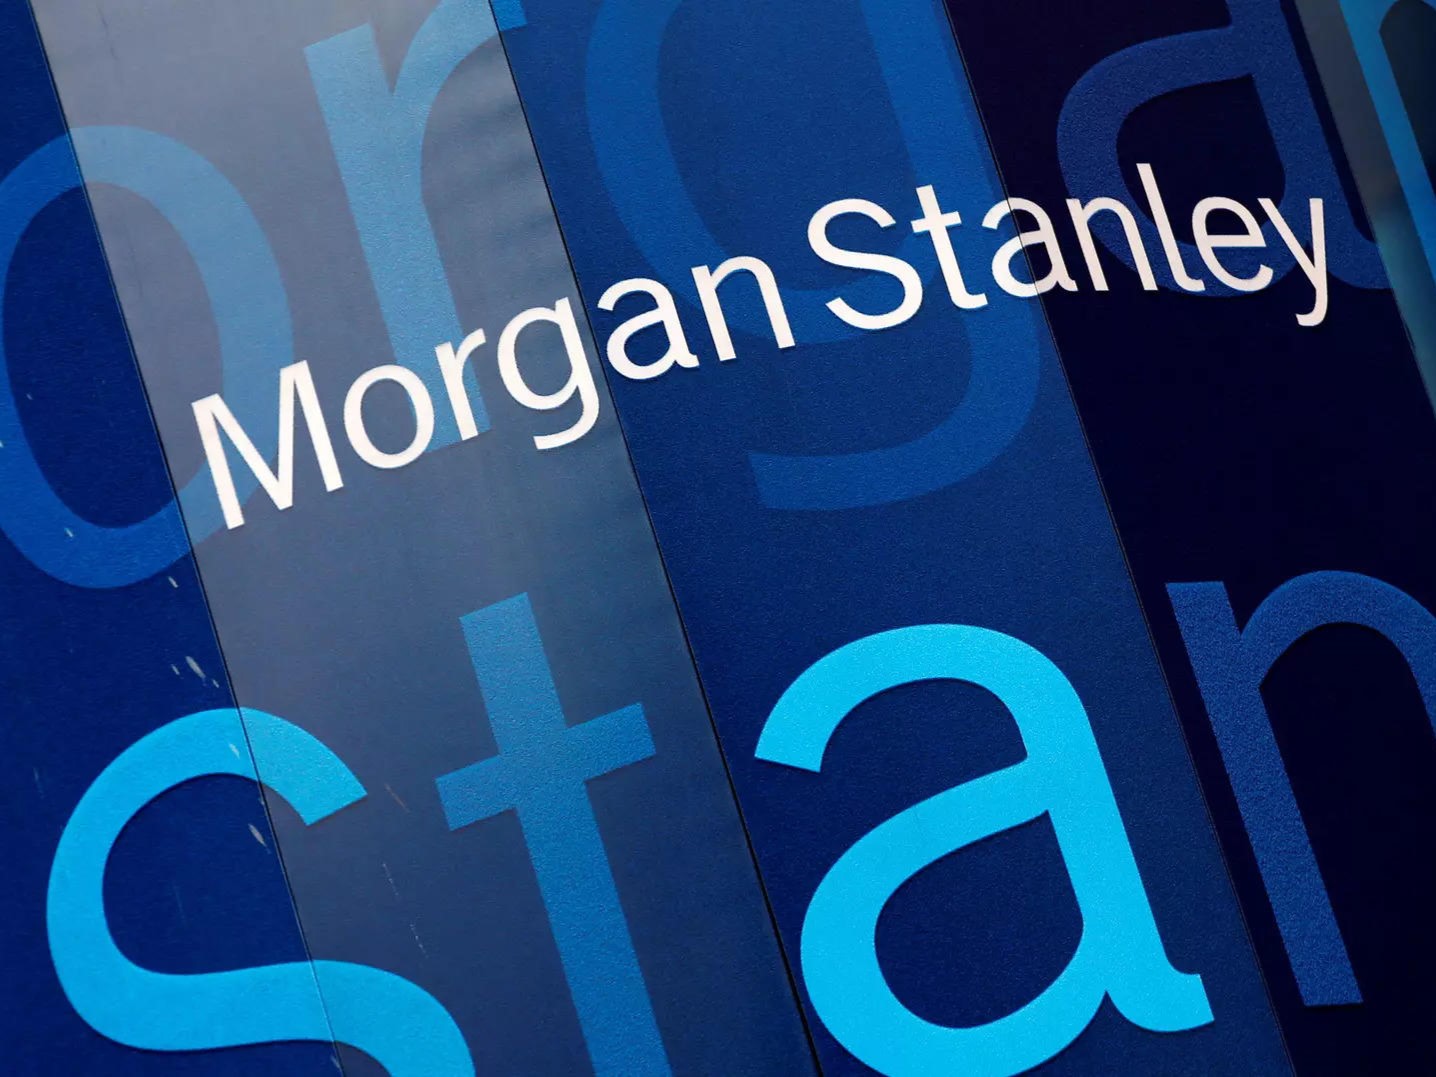 Morgan Stanley očakáva náhly -16% pokles akcií v USA